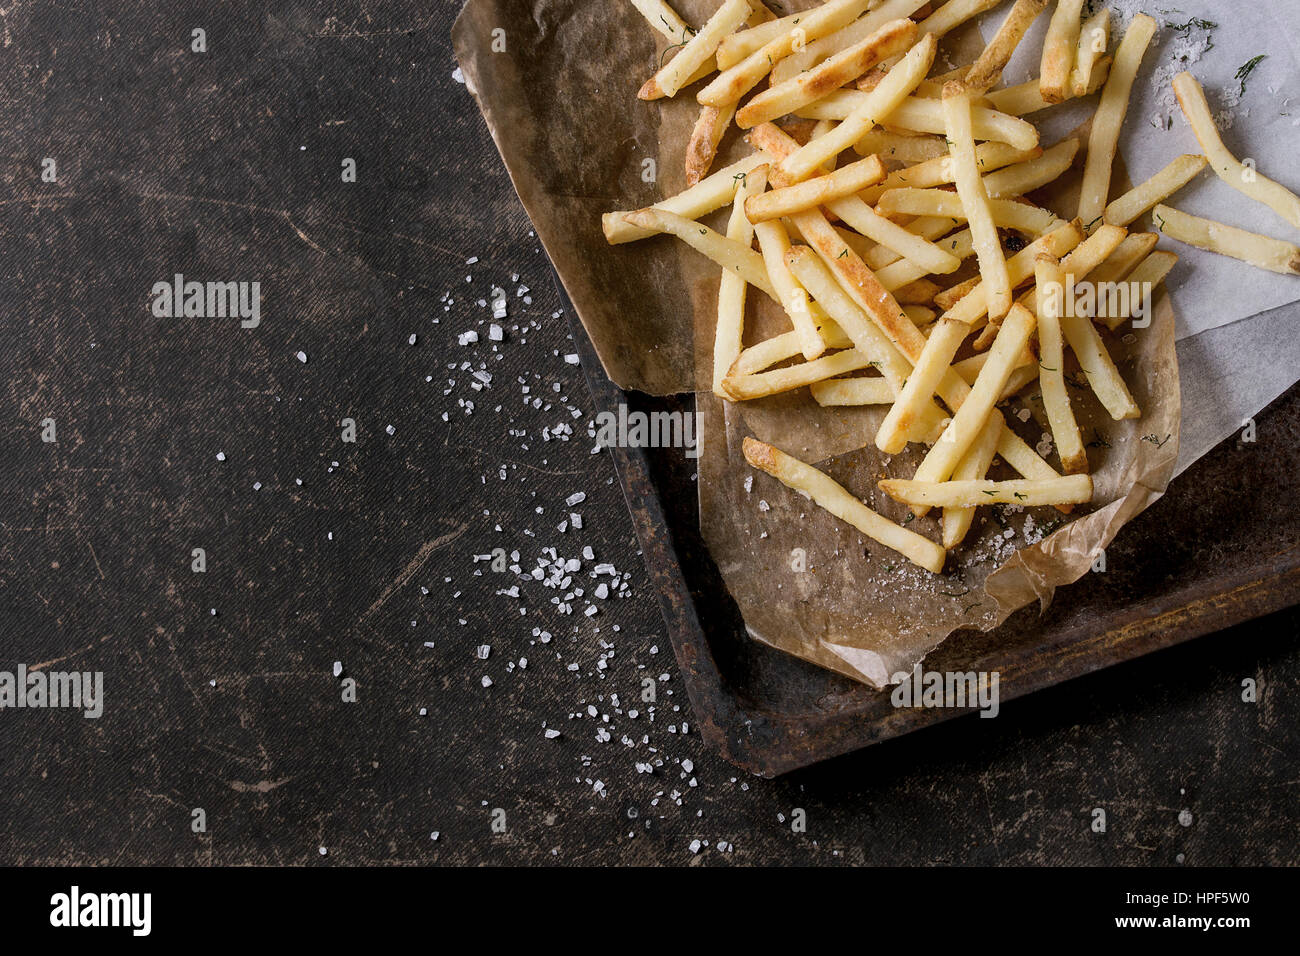 Fast-Food-Pommes frites-Kartoffeln mit Haut mit Salz und Kräutern auf Backpapier auf alten rostigen Backblech über dunkle Textur Hintergrund serviert. Draufsicht, sp Stockfoto